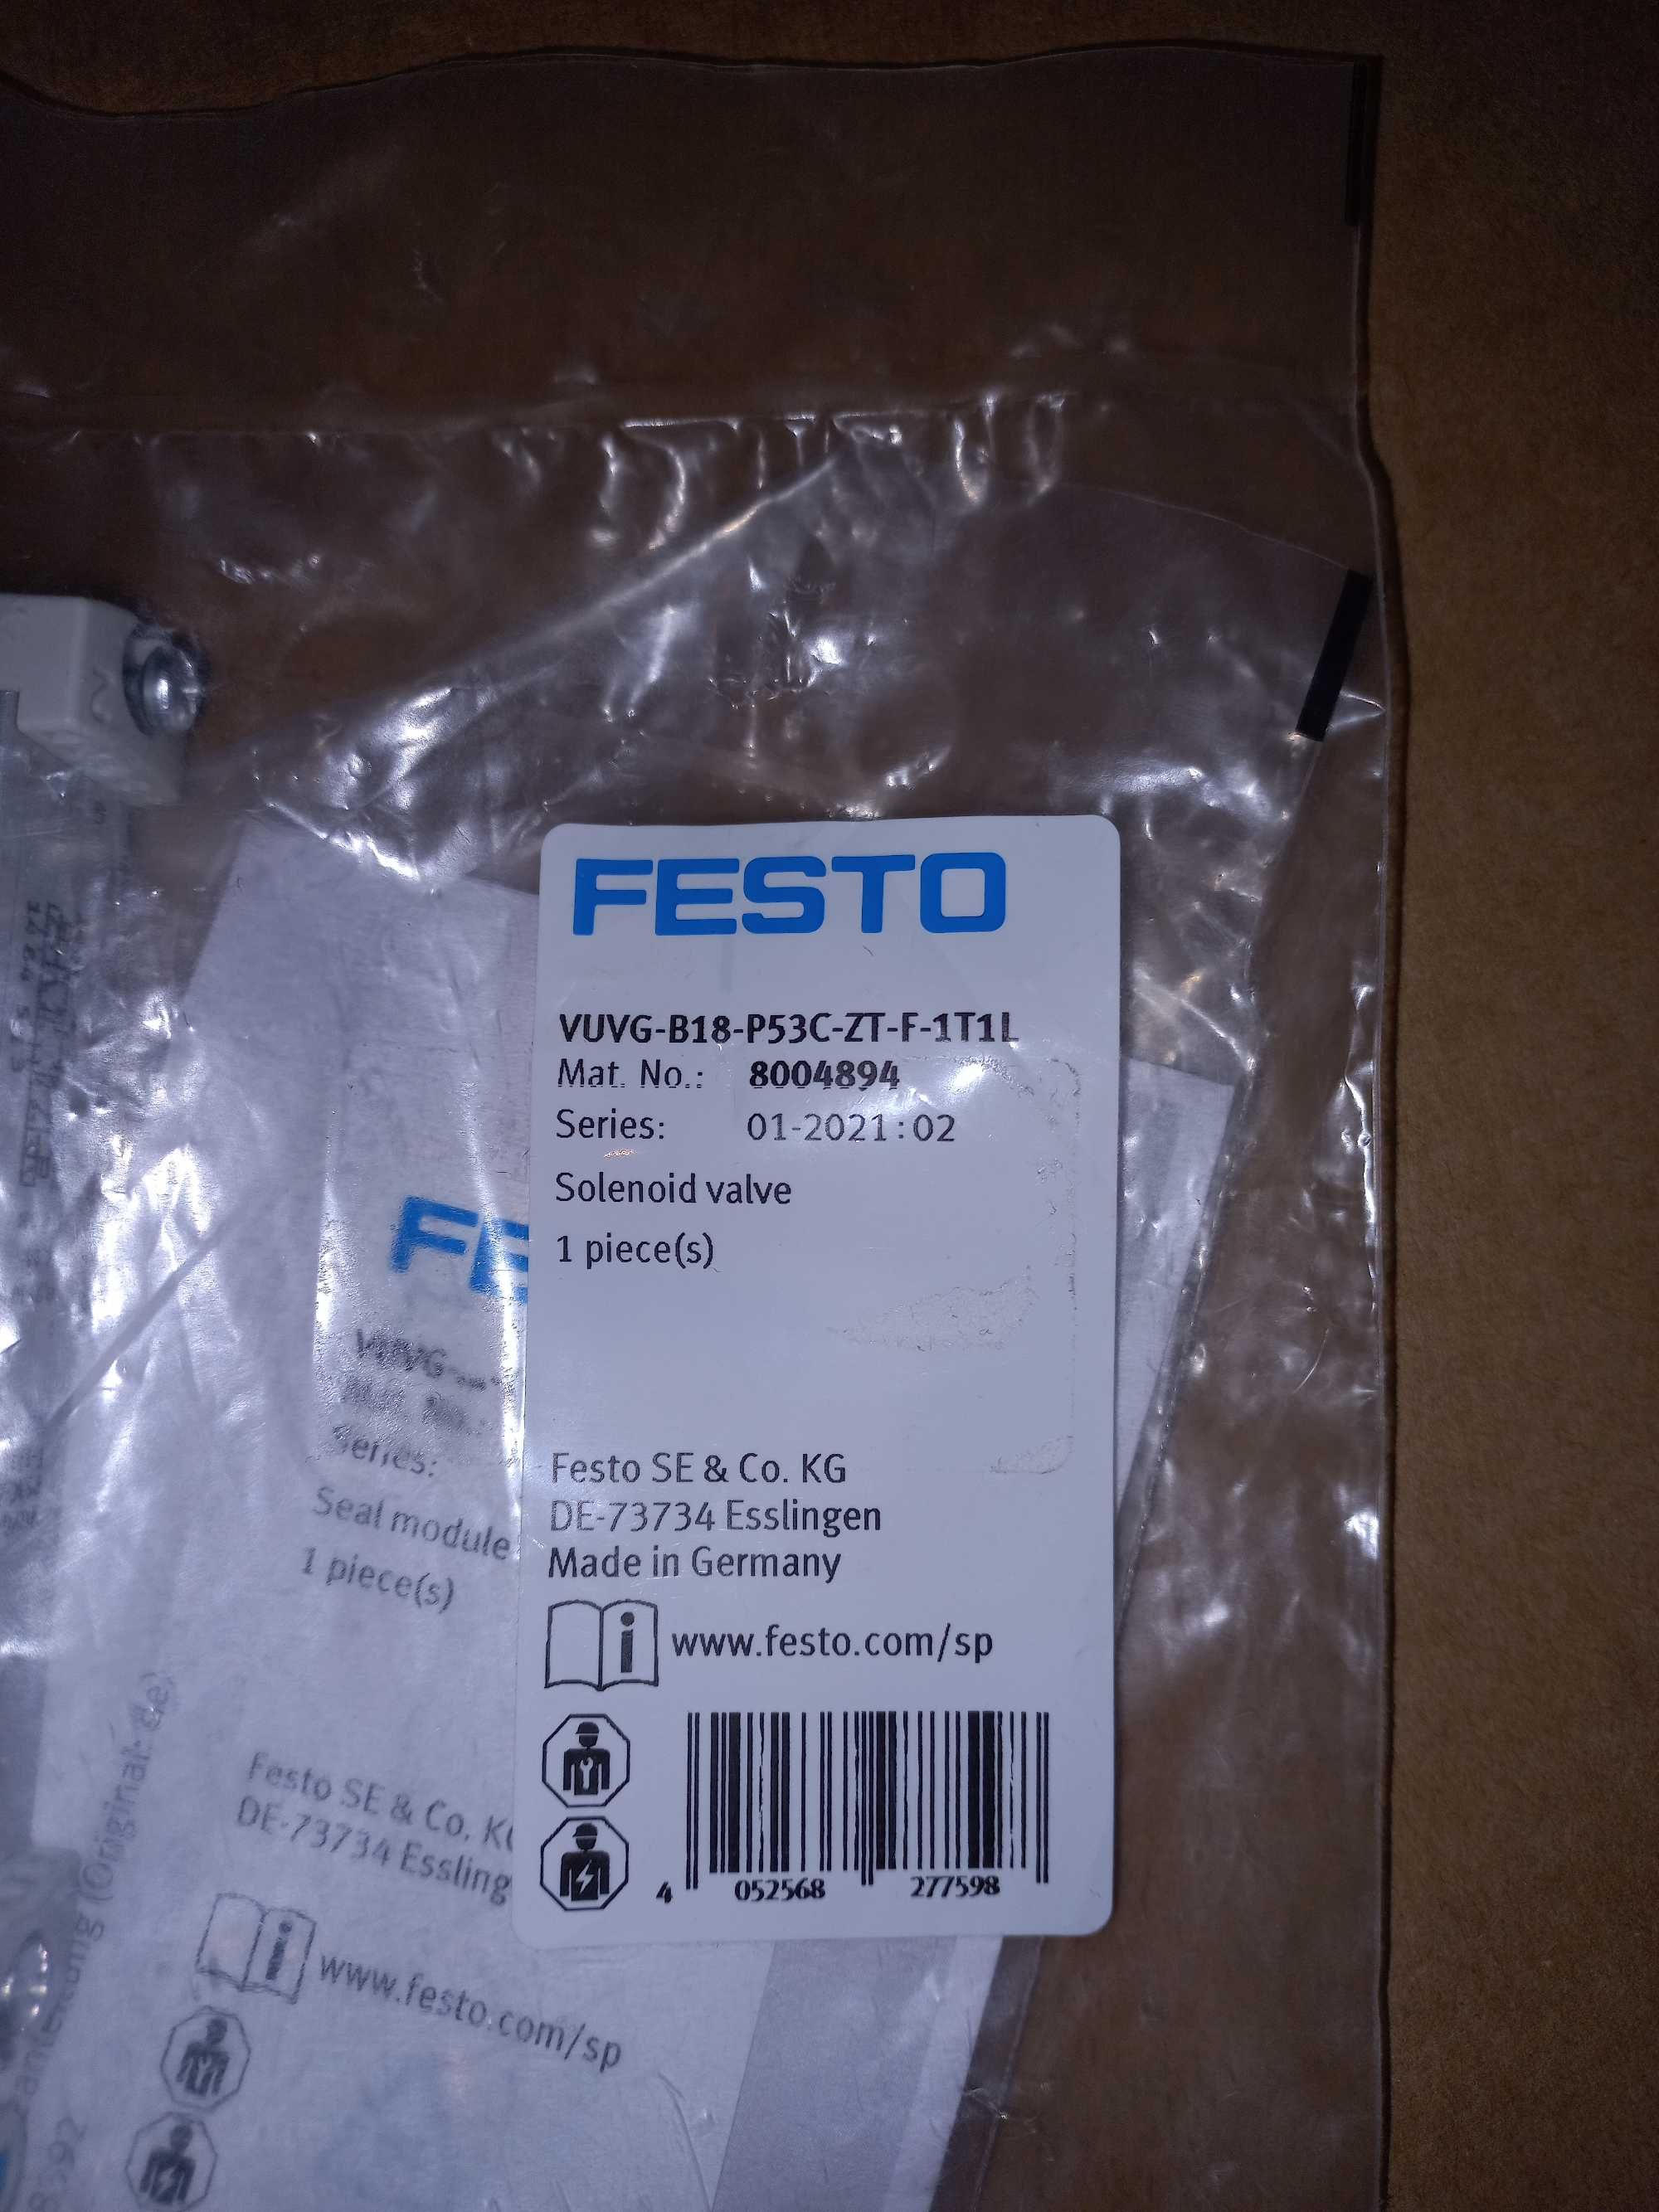 Zawór Festo - VUVG-B18-P53C-ZT-F-1T1L, wielkość 18 mm